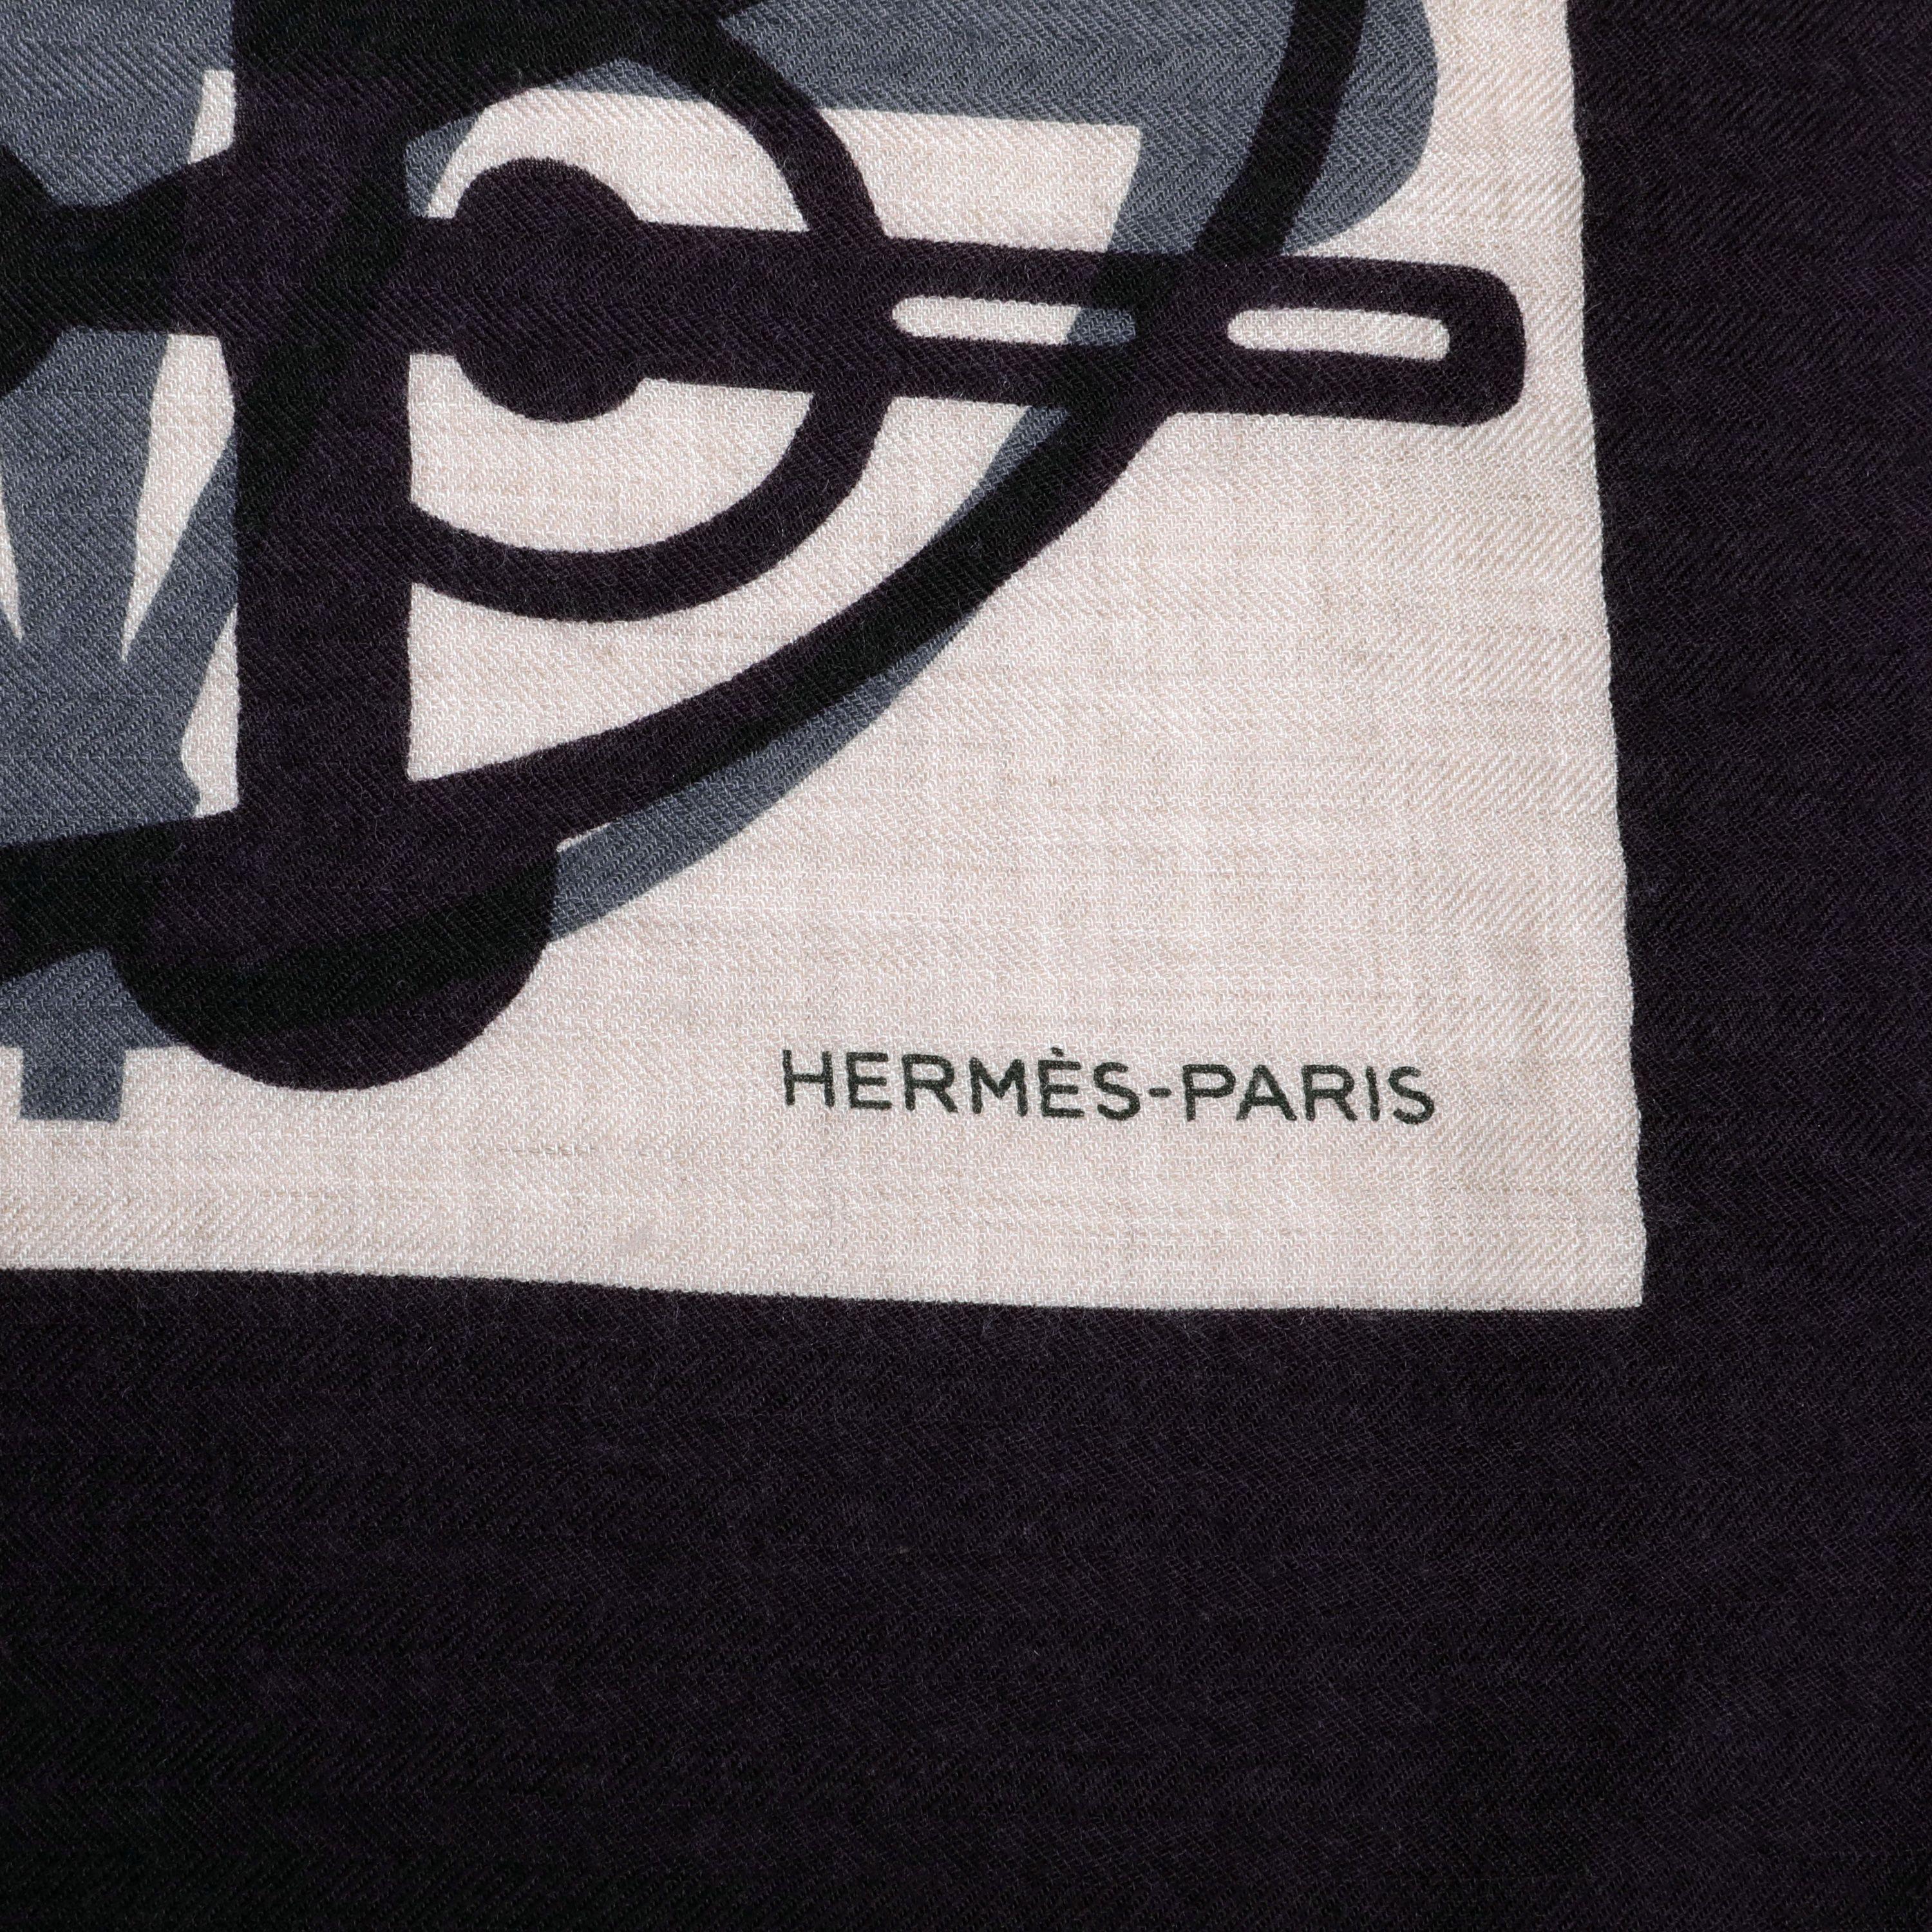 Cette authentique écharpe en cachemire à motifs gris violet marine d'Hermès est impeccable.  Imprimé géométrique dans des tons sombres de bleu profond, de violet et de gris.  

PBF 13649
